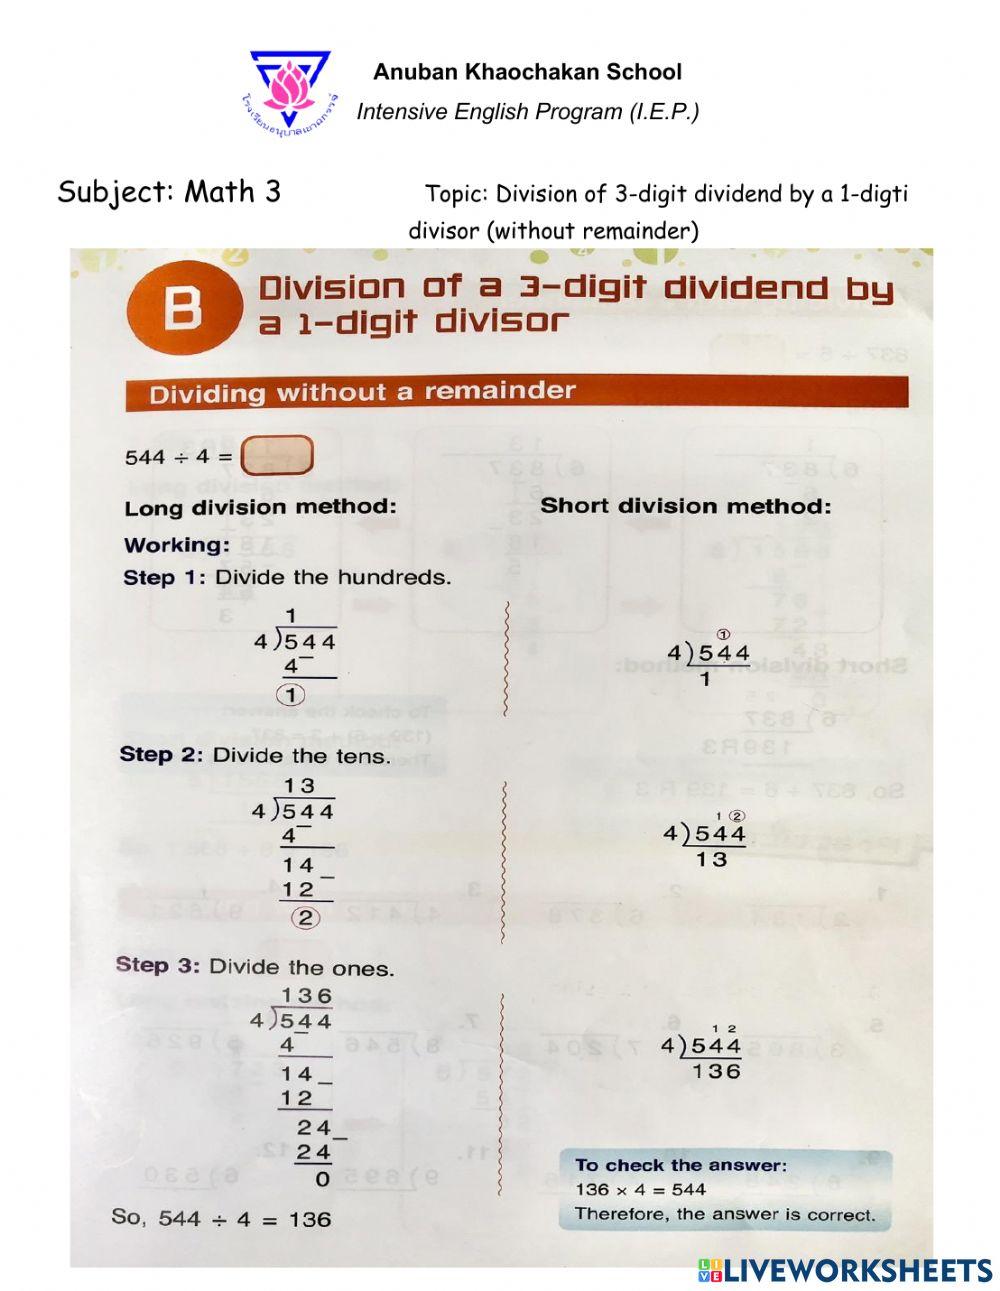 Division of 3-digit dividend by 1-digit divisor